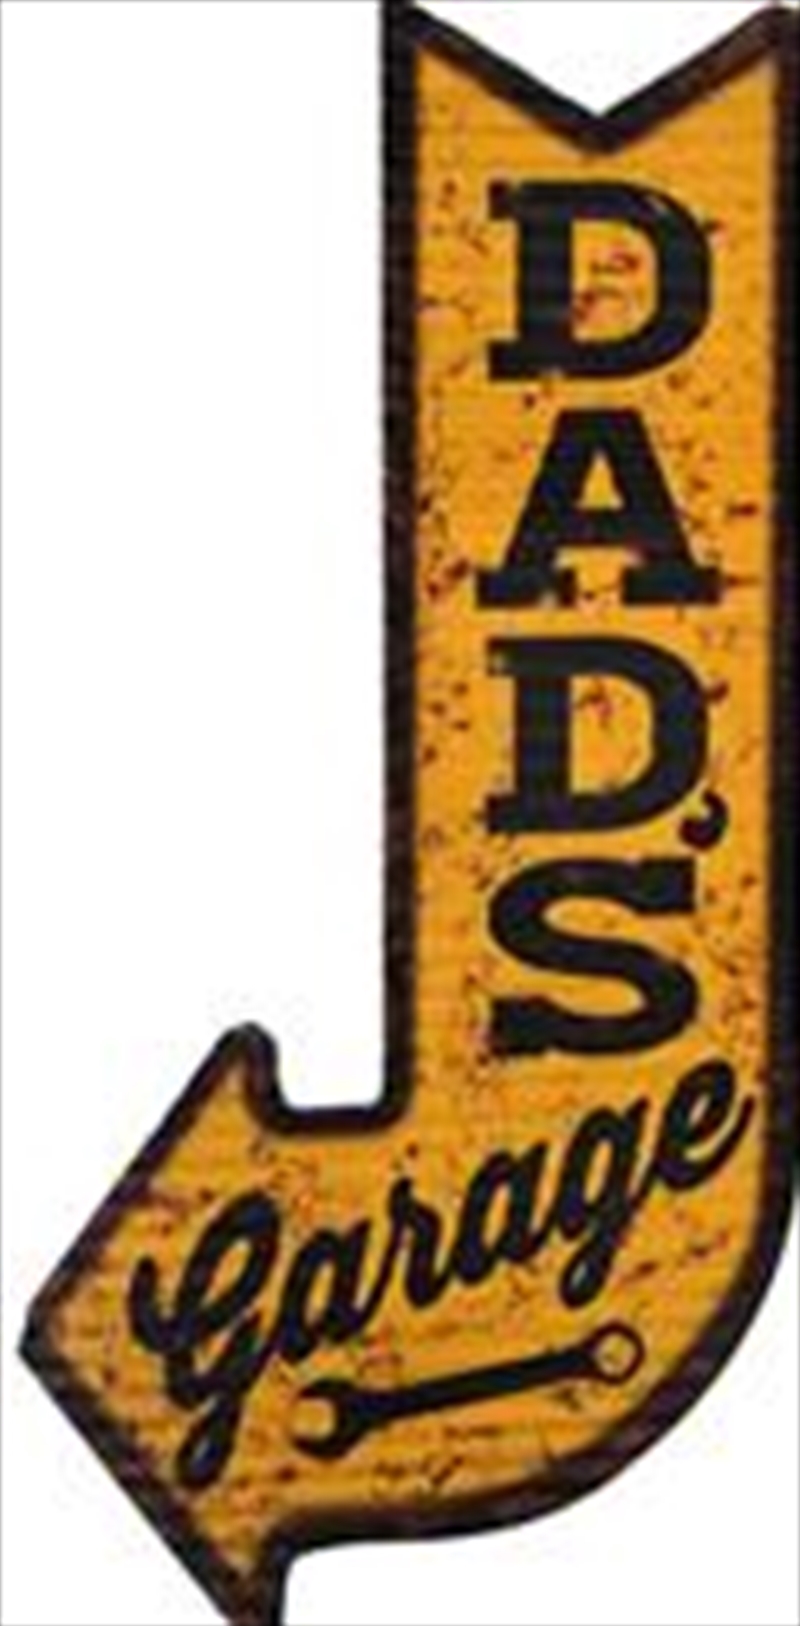 Dad's Garage Arrow Metal Sign | Merchandise